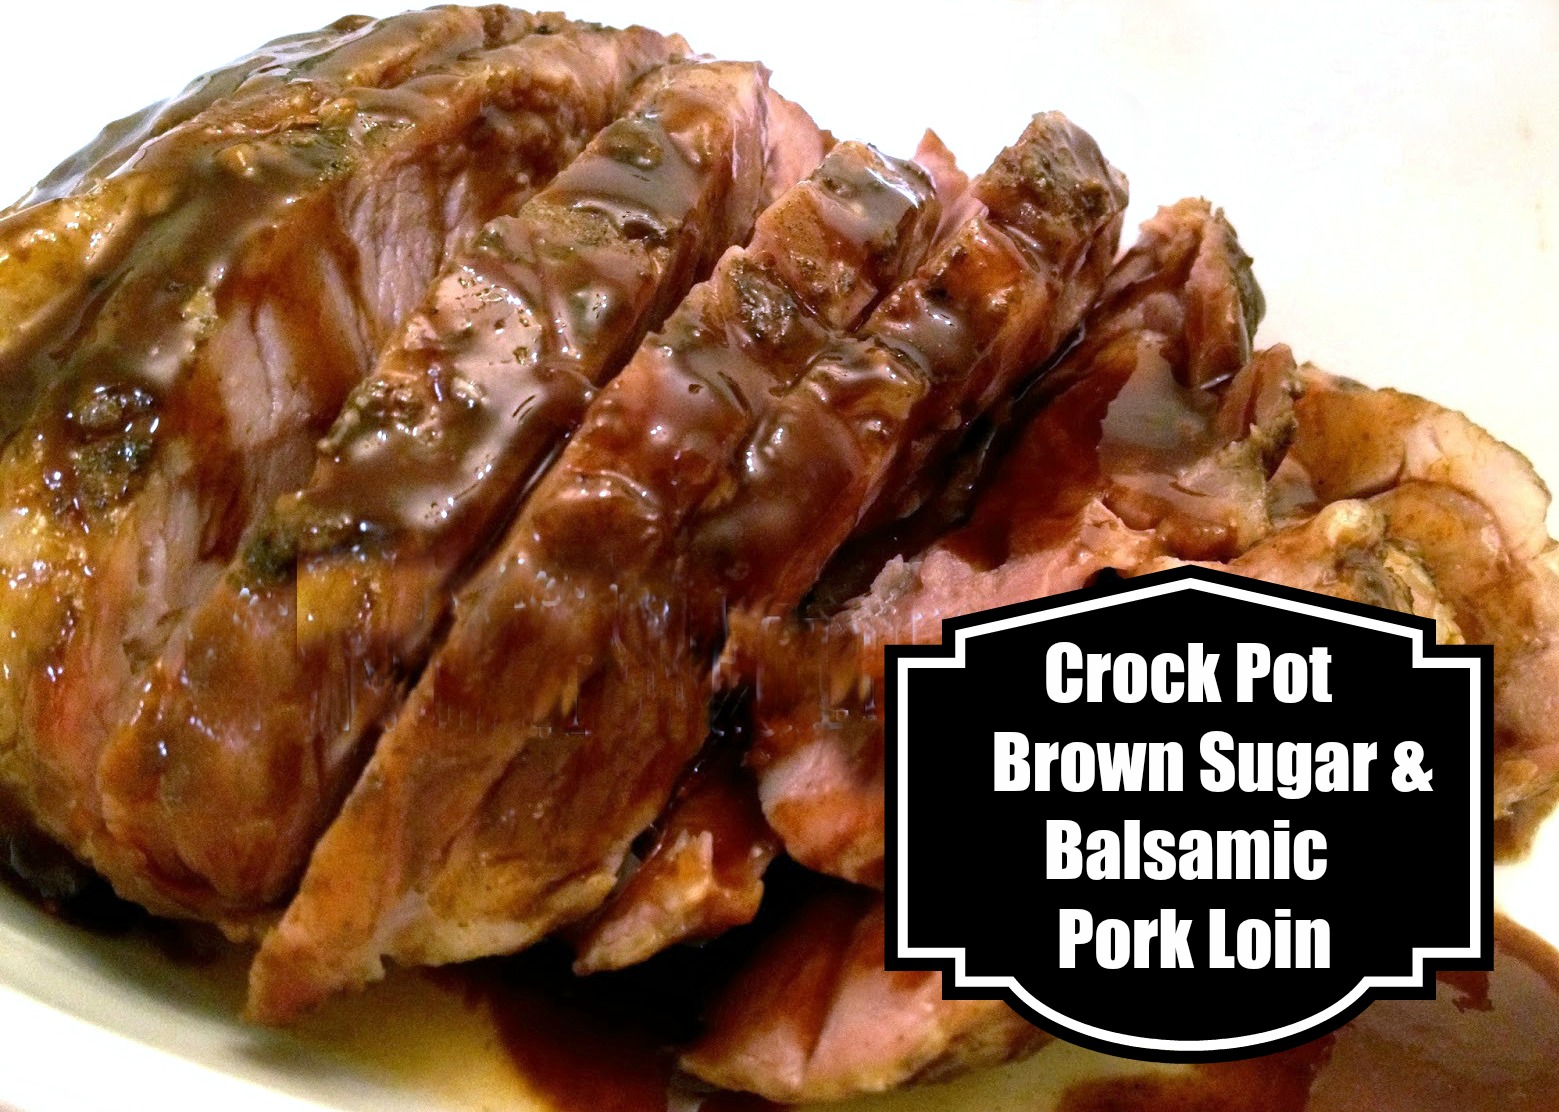 Crockpot Brown Sugar and Balsamic Pork Loin